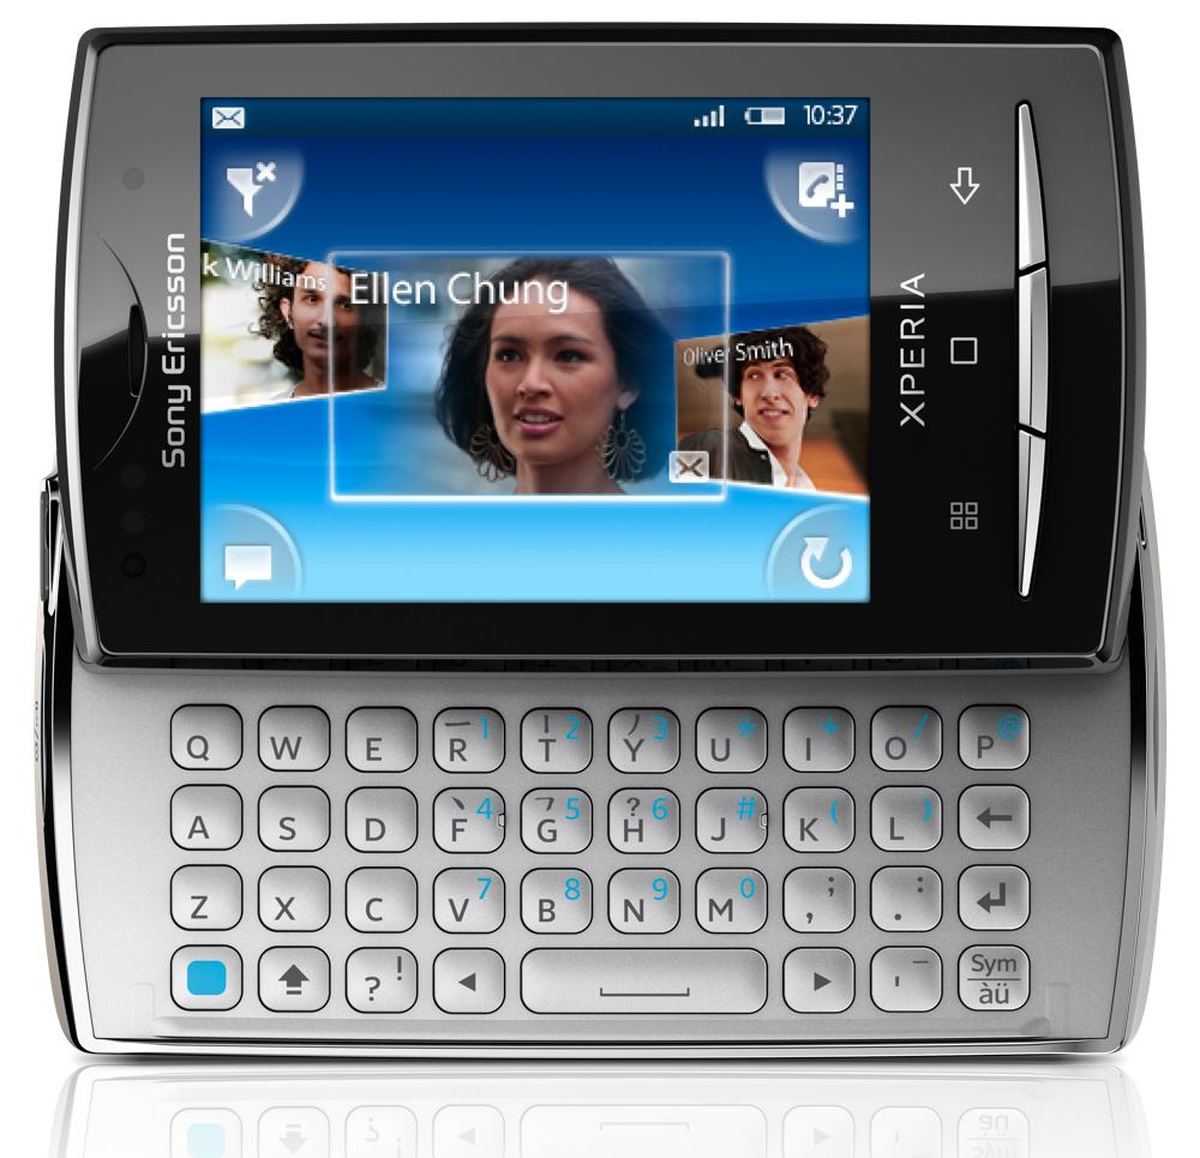 Sony Ericsson Xperia X10 mini pro : Caratteristiche e Opinioni | JuzaPhoto